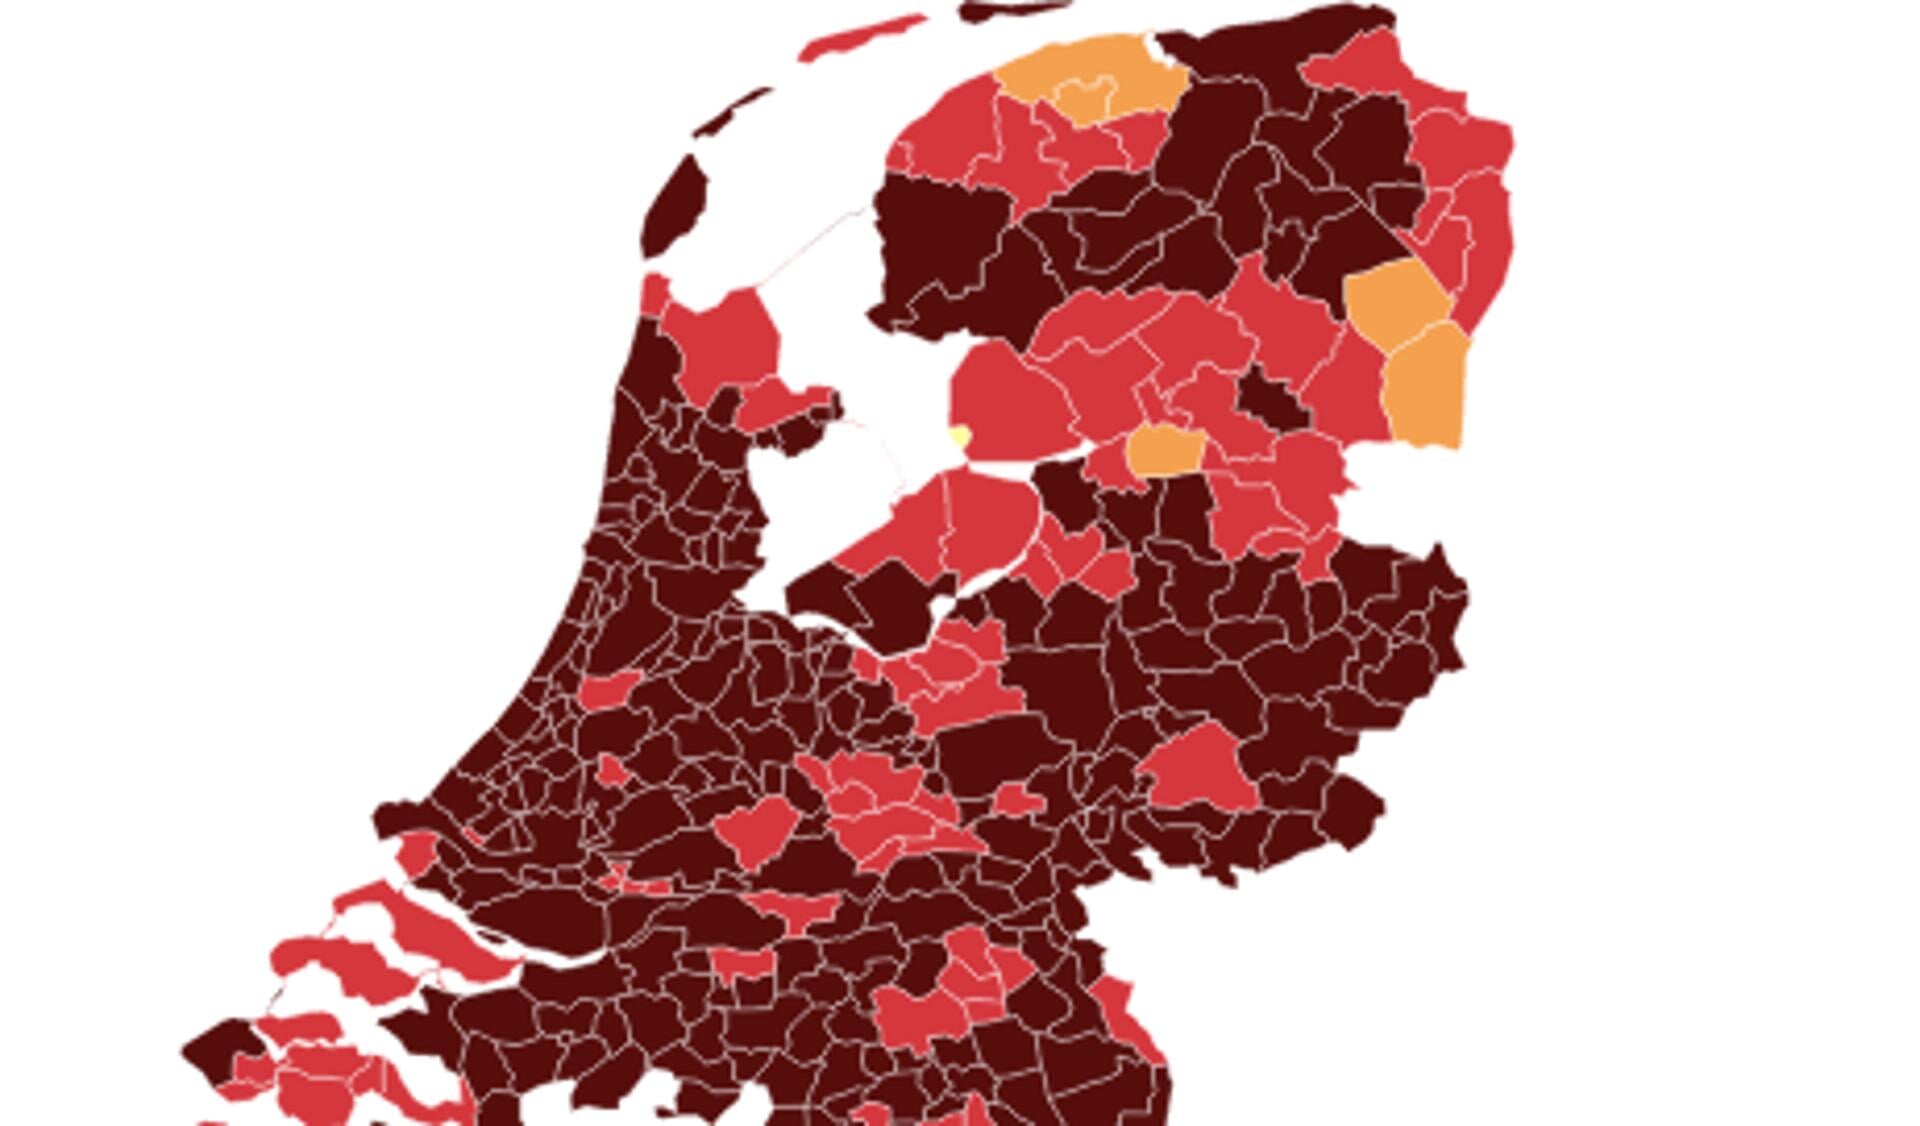 In bijna heel Nederland is de situatie nu 'ernstig' tot 'zeer ernstig'.